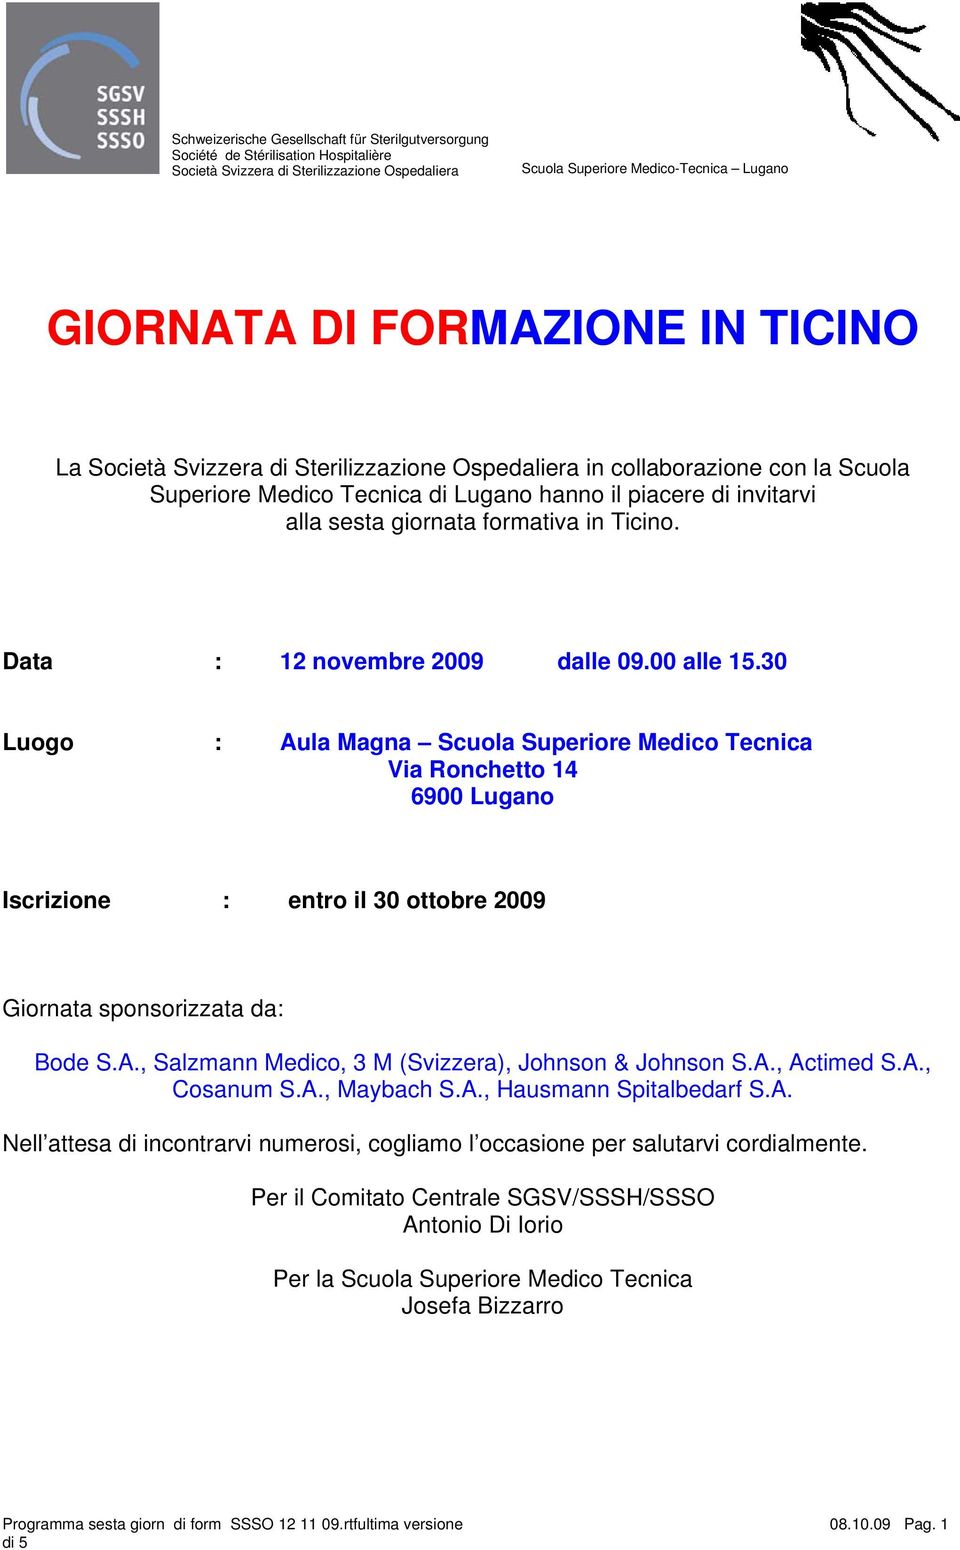 30 Luogo : Aula Magna Scuola Superiore Medico Tecnica Via Ronchetto 14 6900 Lugano Iscrizione : entro il 30 ottobre 2009 Giornata sponsorizzata da: Bode S.A., Salzmann Medico, 3 M (Svizzera), Johnson & Johnson S.